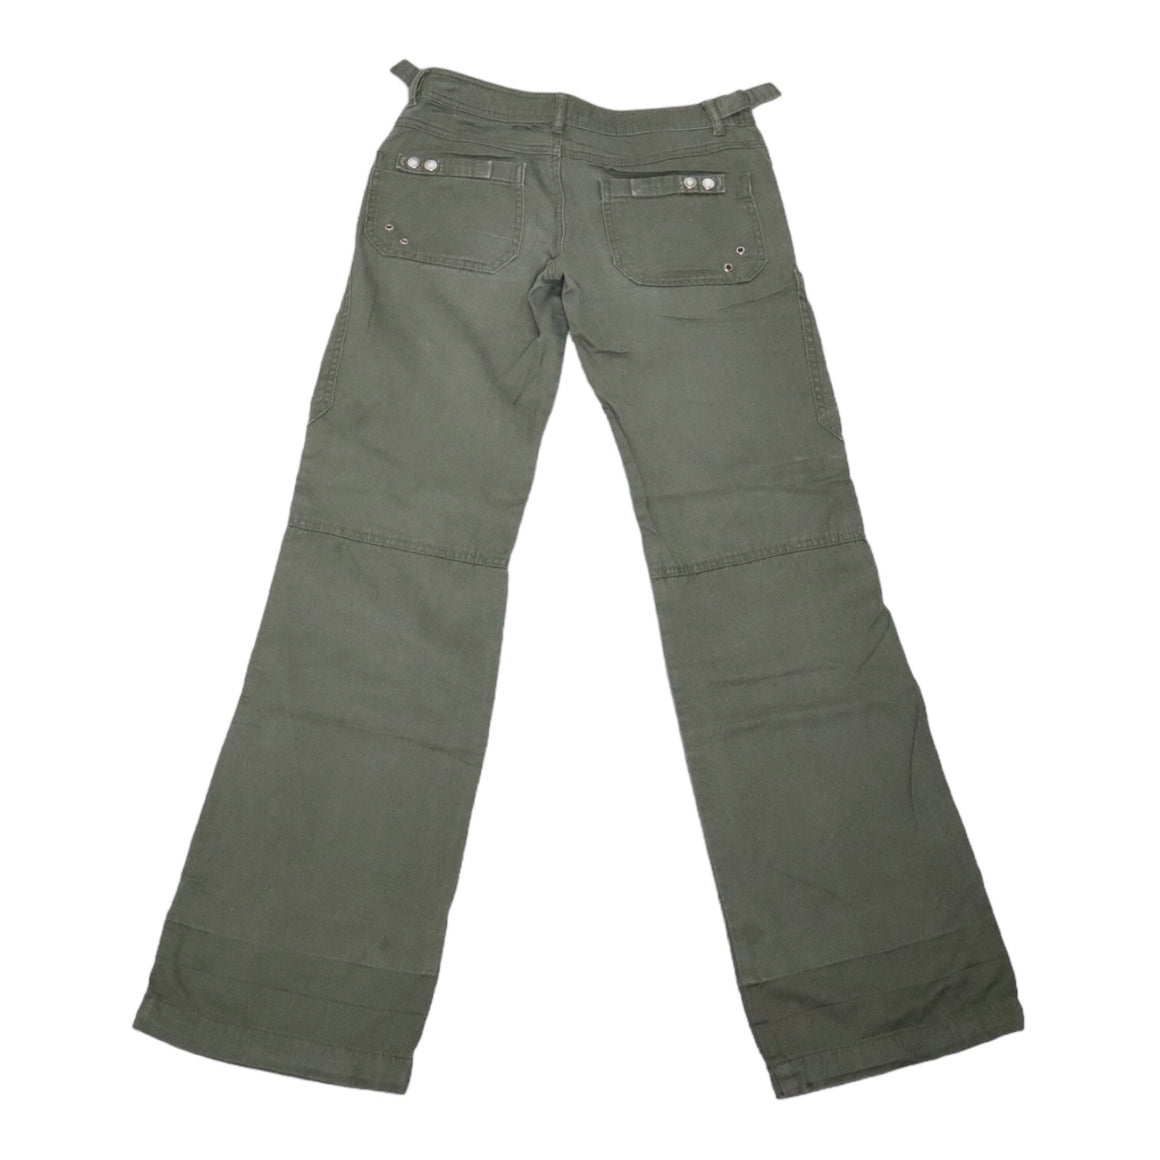 Khaki Cargo Pants (XS)